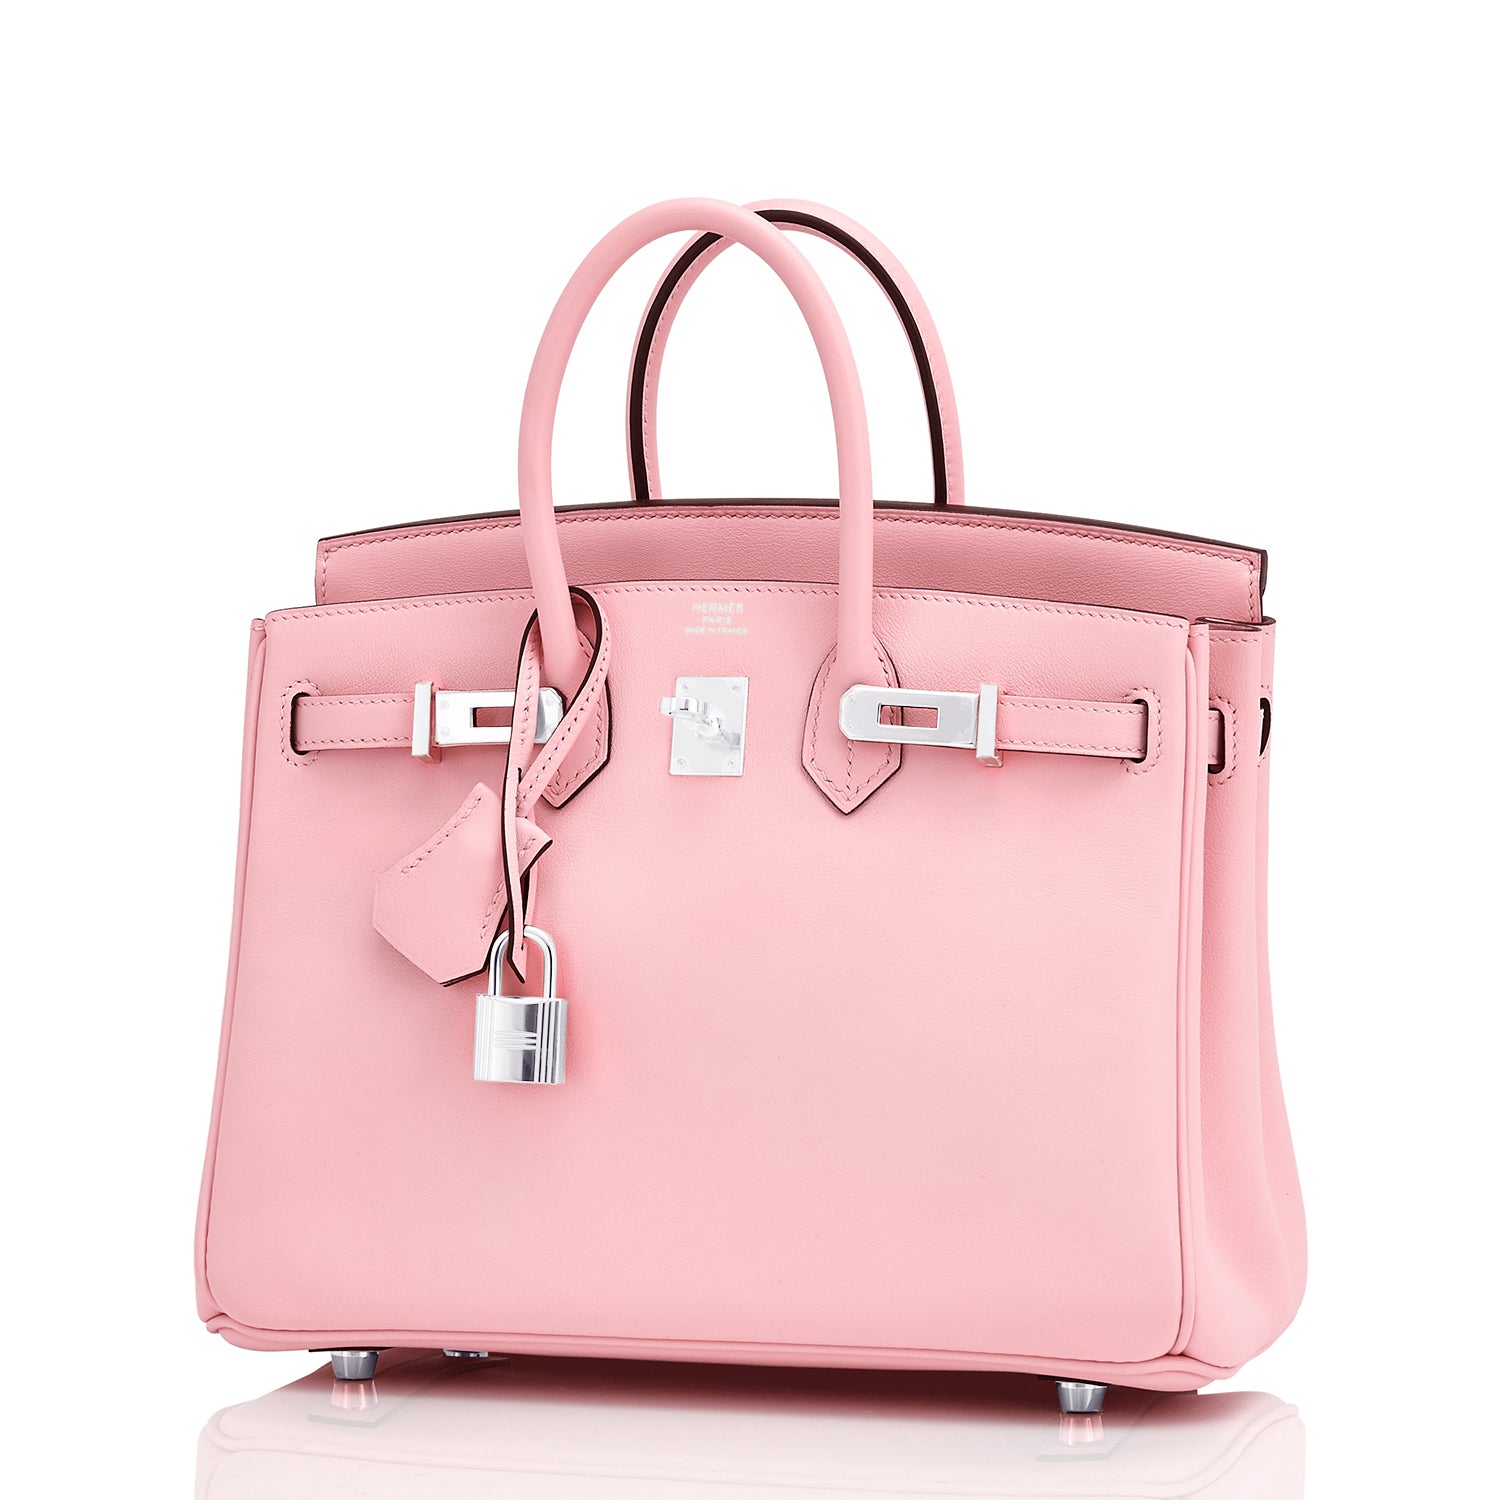 Sell Hermès Rose Sakura Birkin 25 Bag - Soft Pink